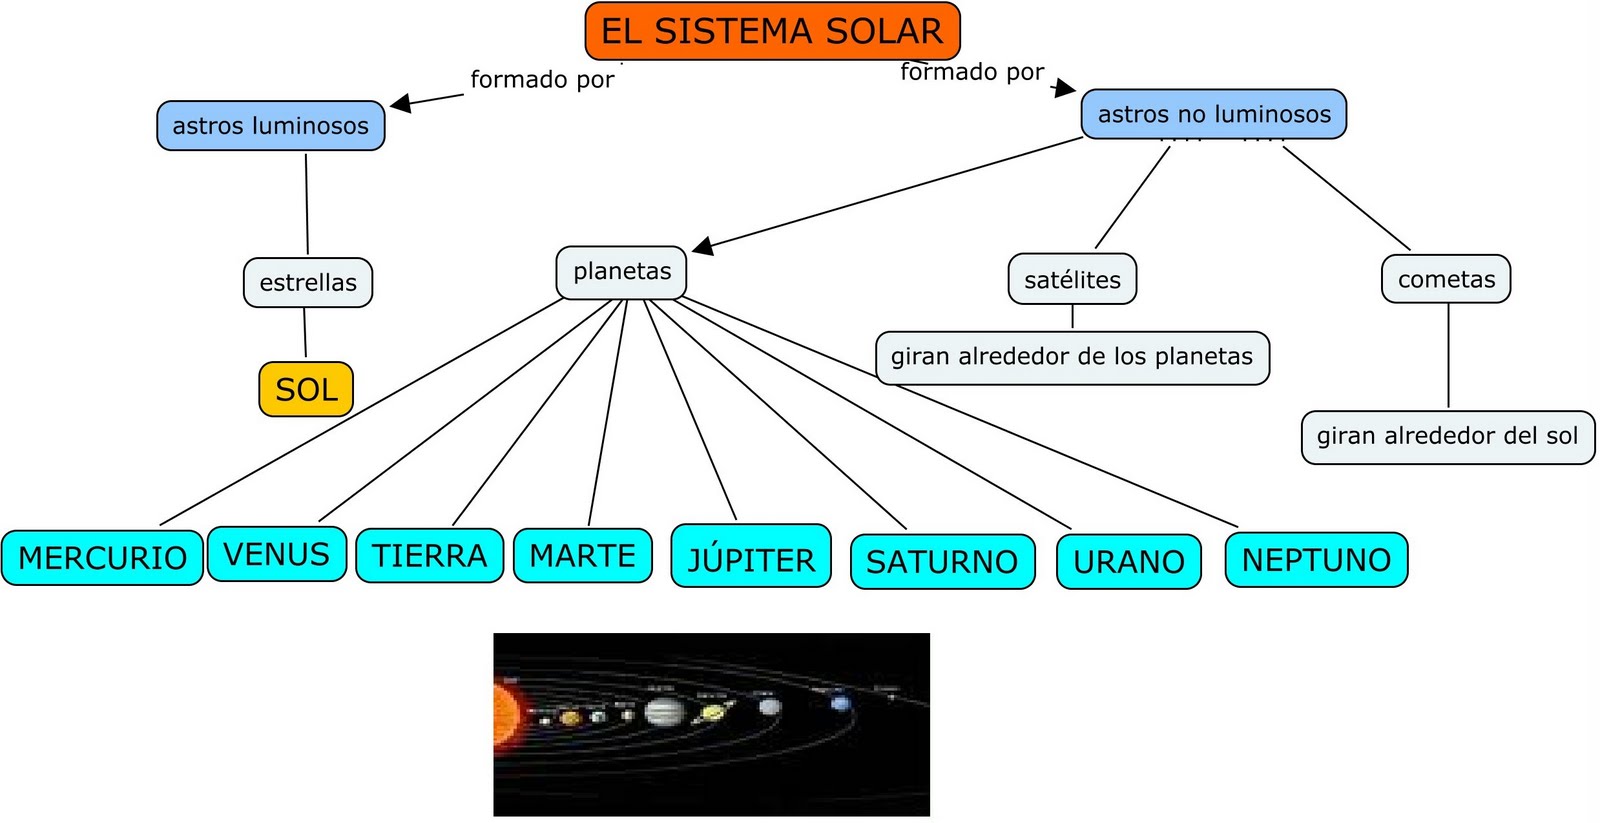 El Sistema Solar Se Formó Hace Unos 4600 Millones De Años A Través De